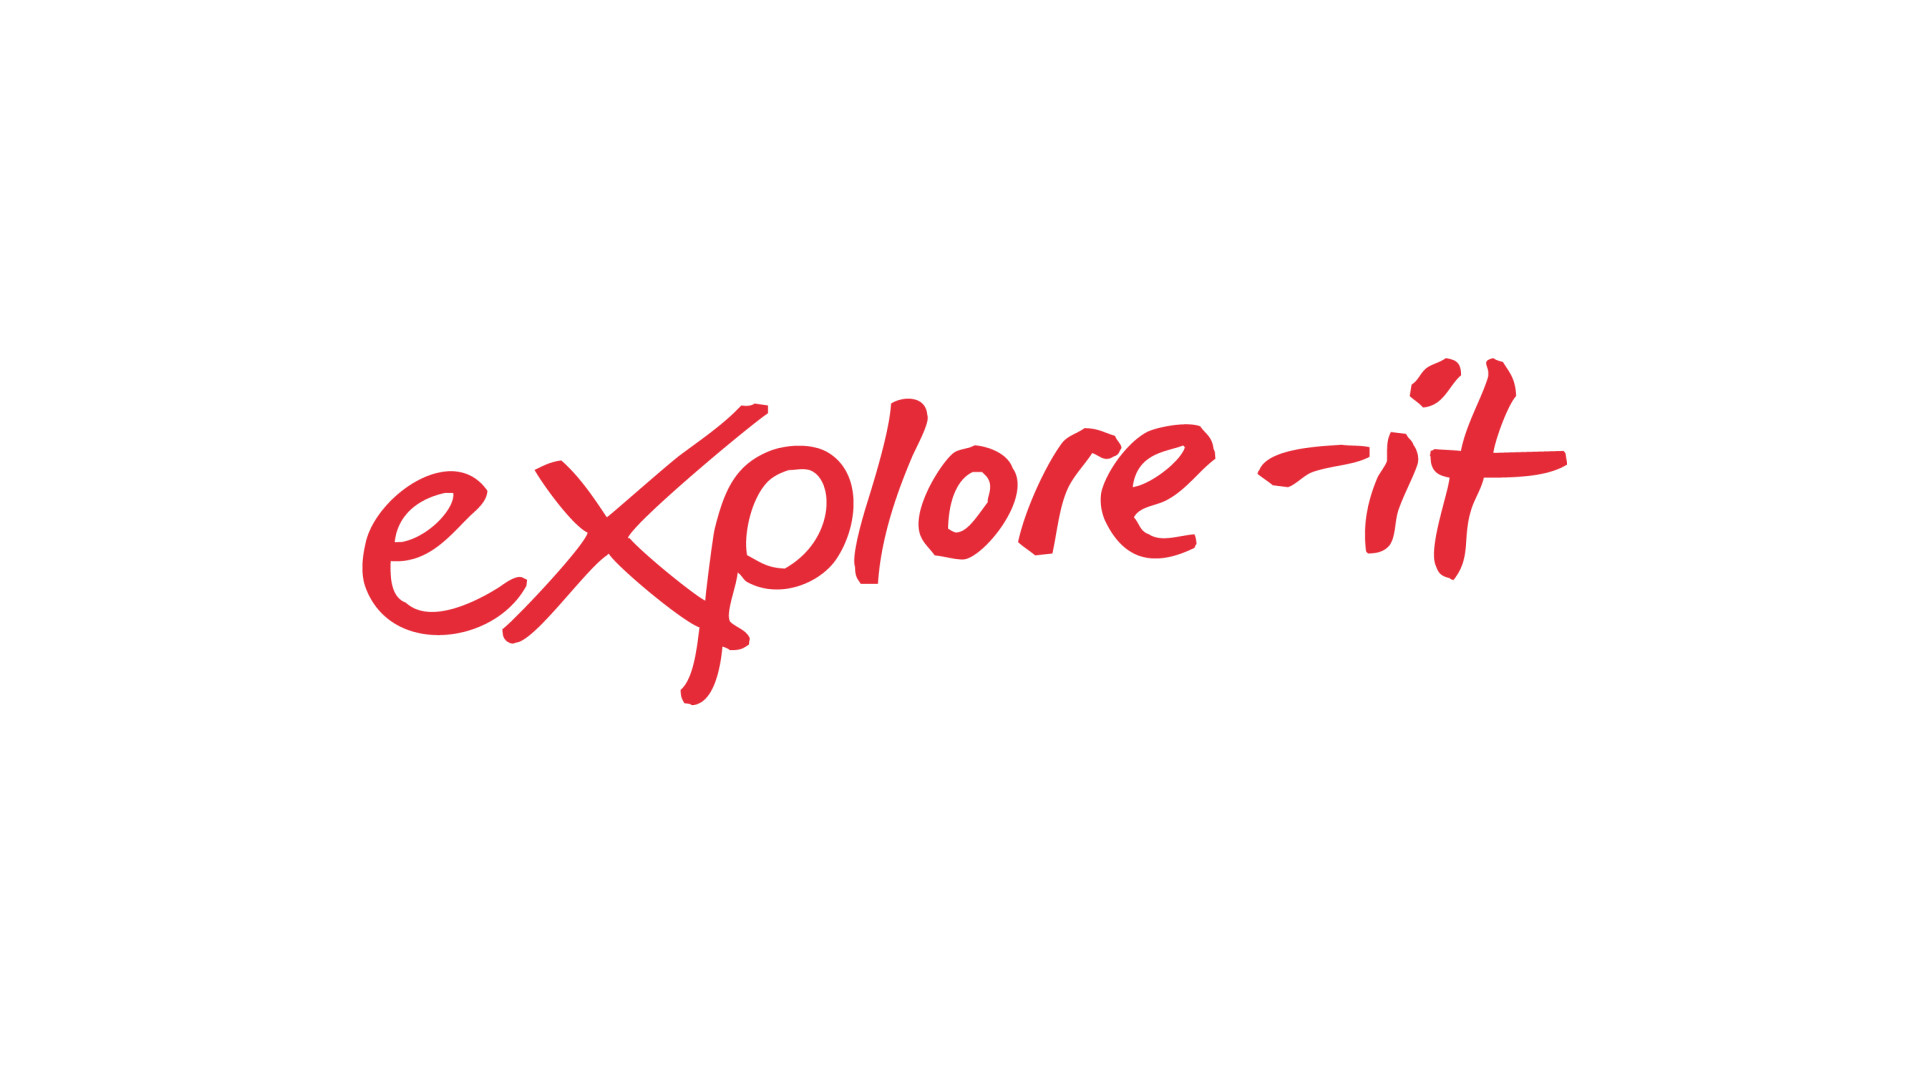 Explore-it